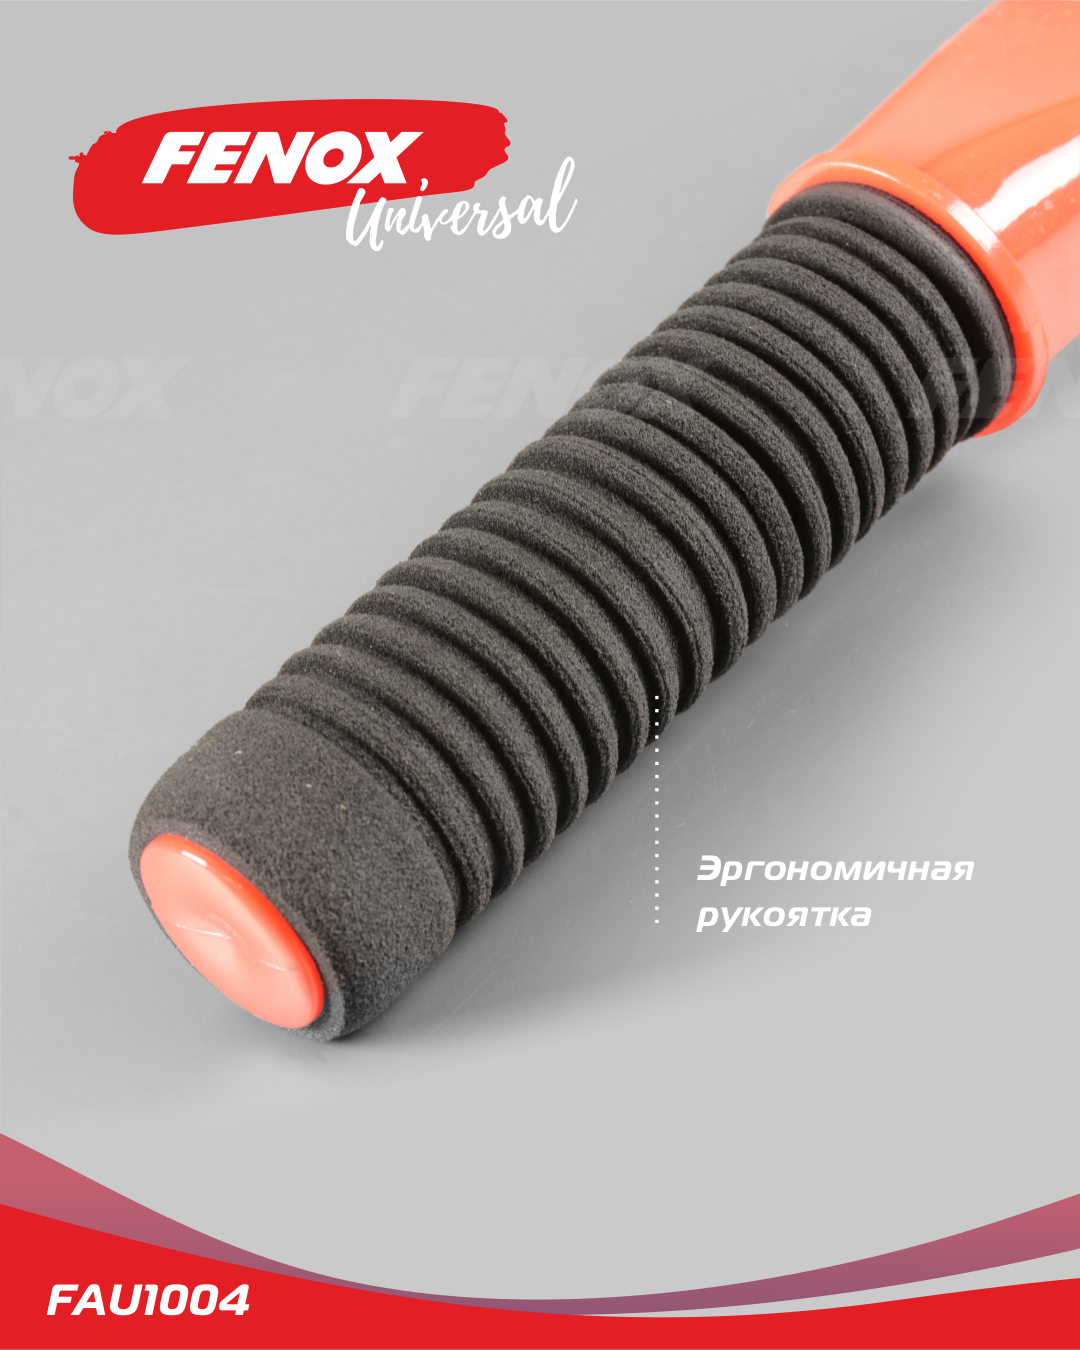 Скребок с водосгоном и эргономичной рукояткой - Fenox FAU1004